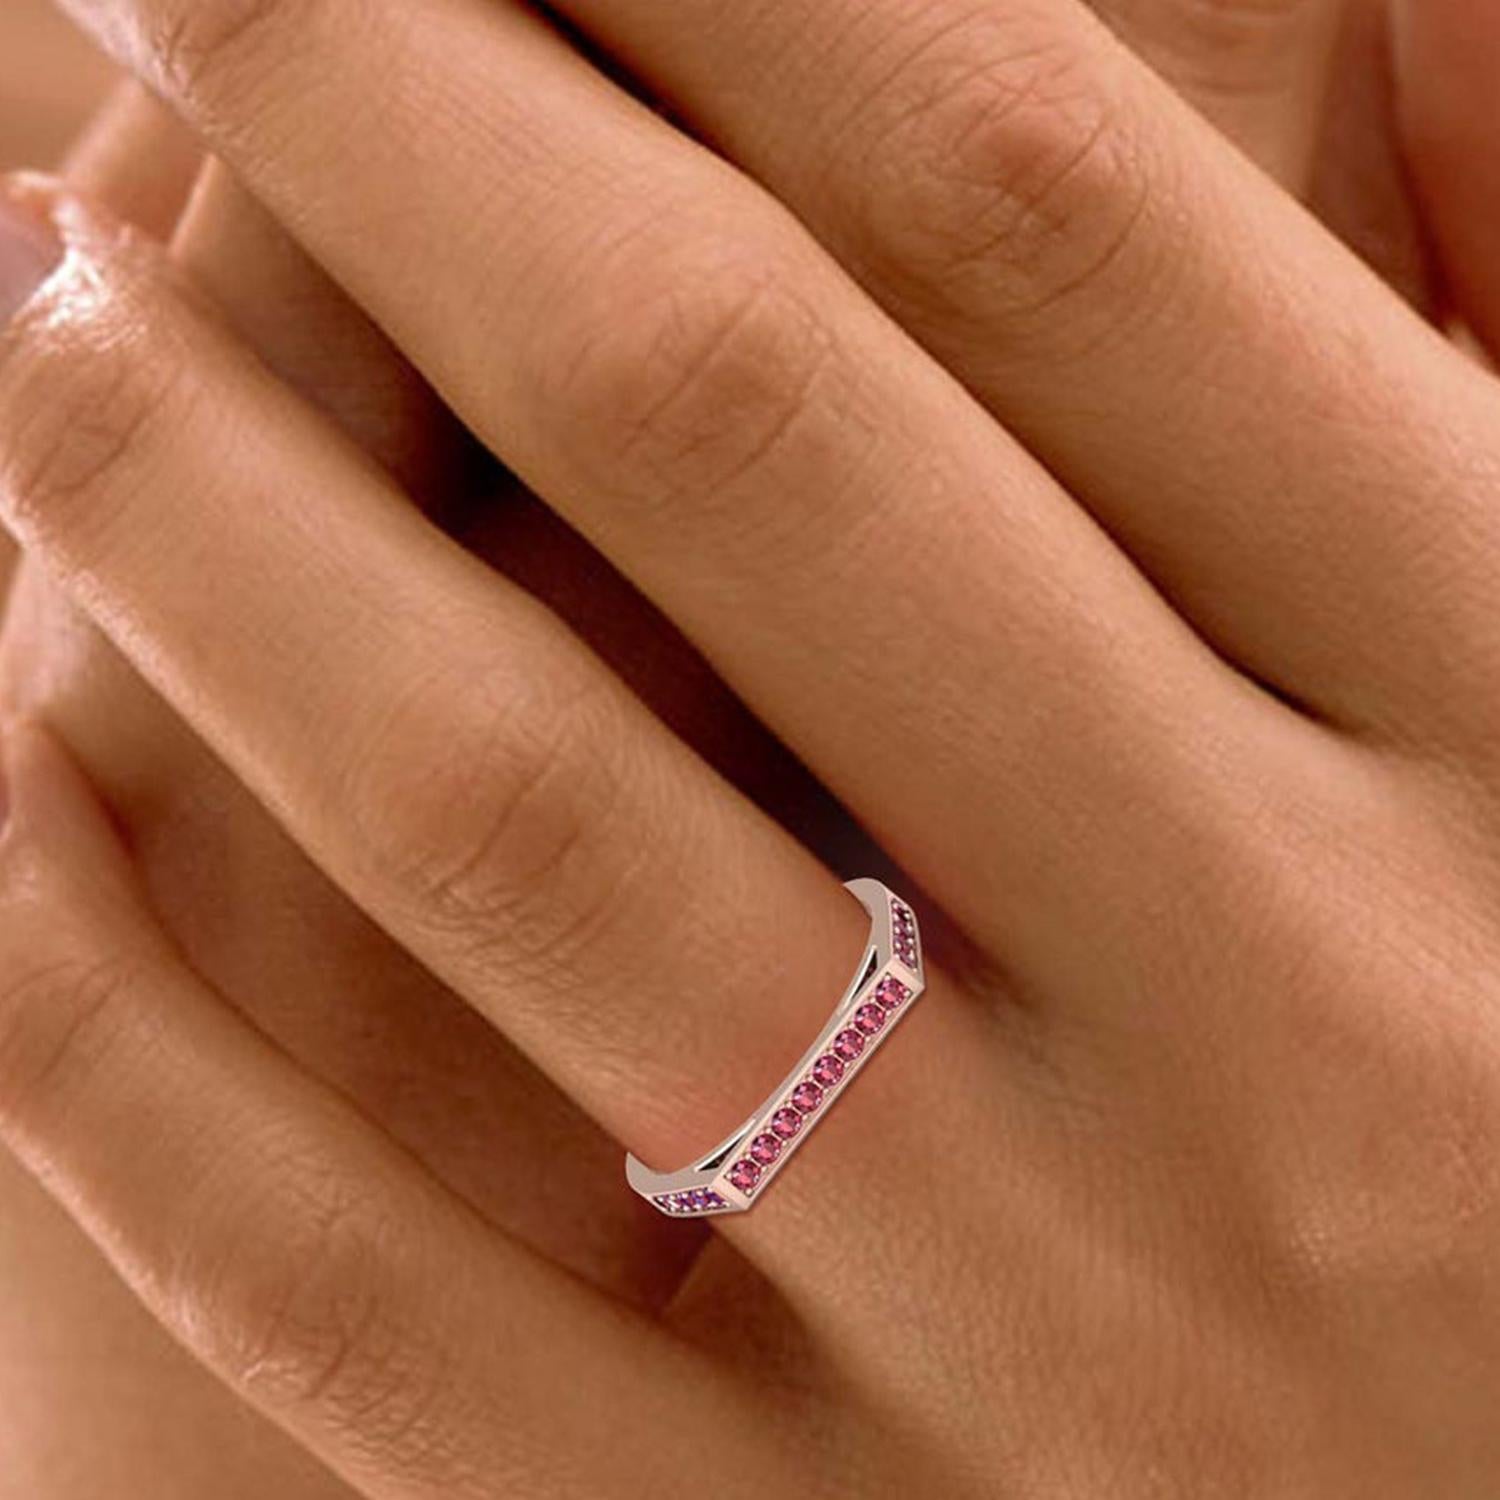 Modern 14k Gold Garnet Ring / Engagement Ring / Ring for Her / January Birthstone Ring For Sale